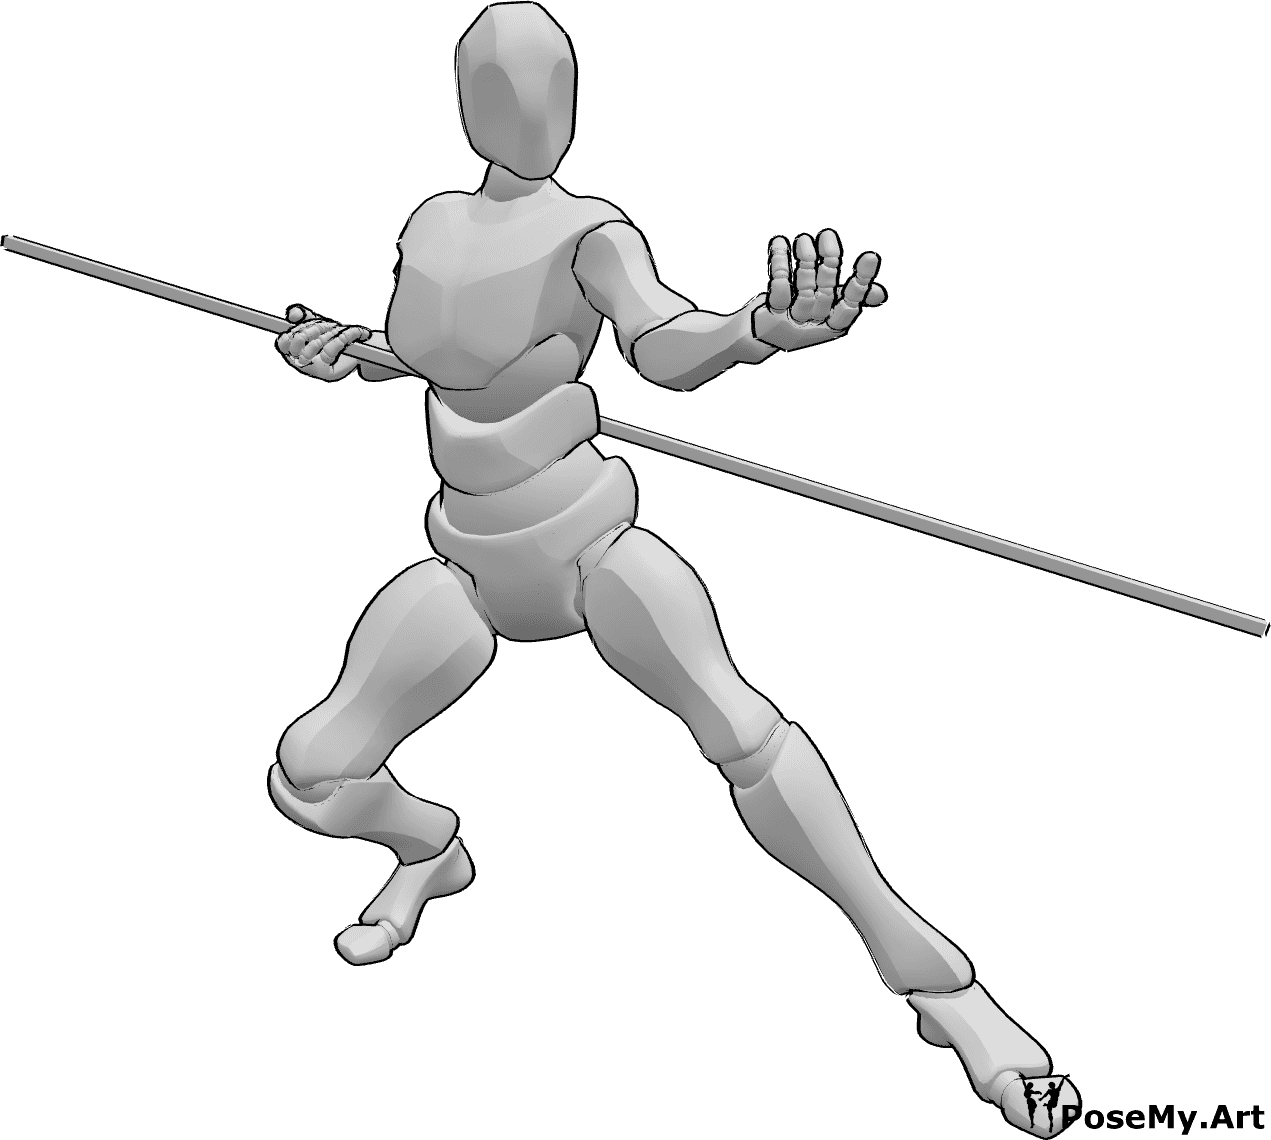 Referência de poses- Homem a convidar para uma pose de combate - Homem segurando um bastão e convidando a uma pose de combate